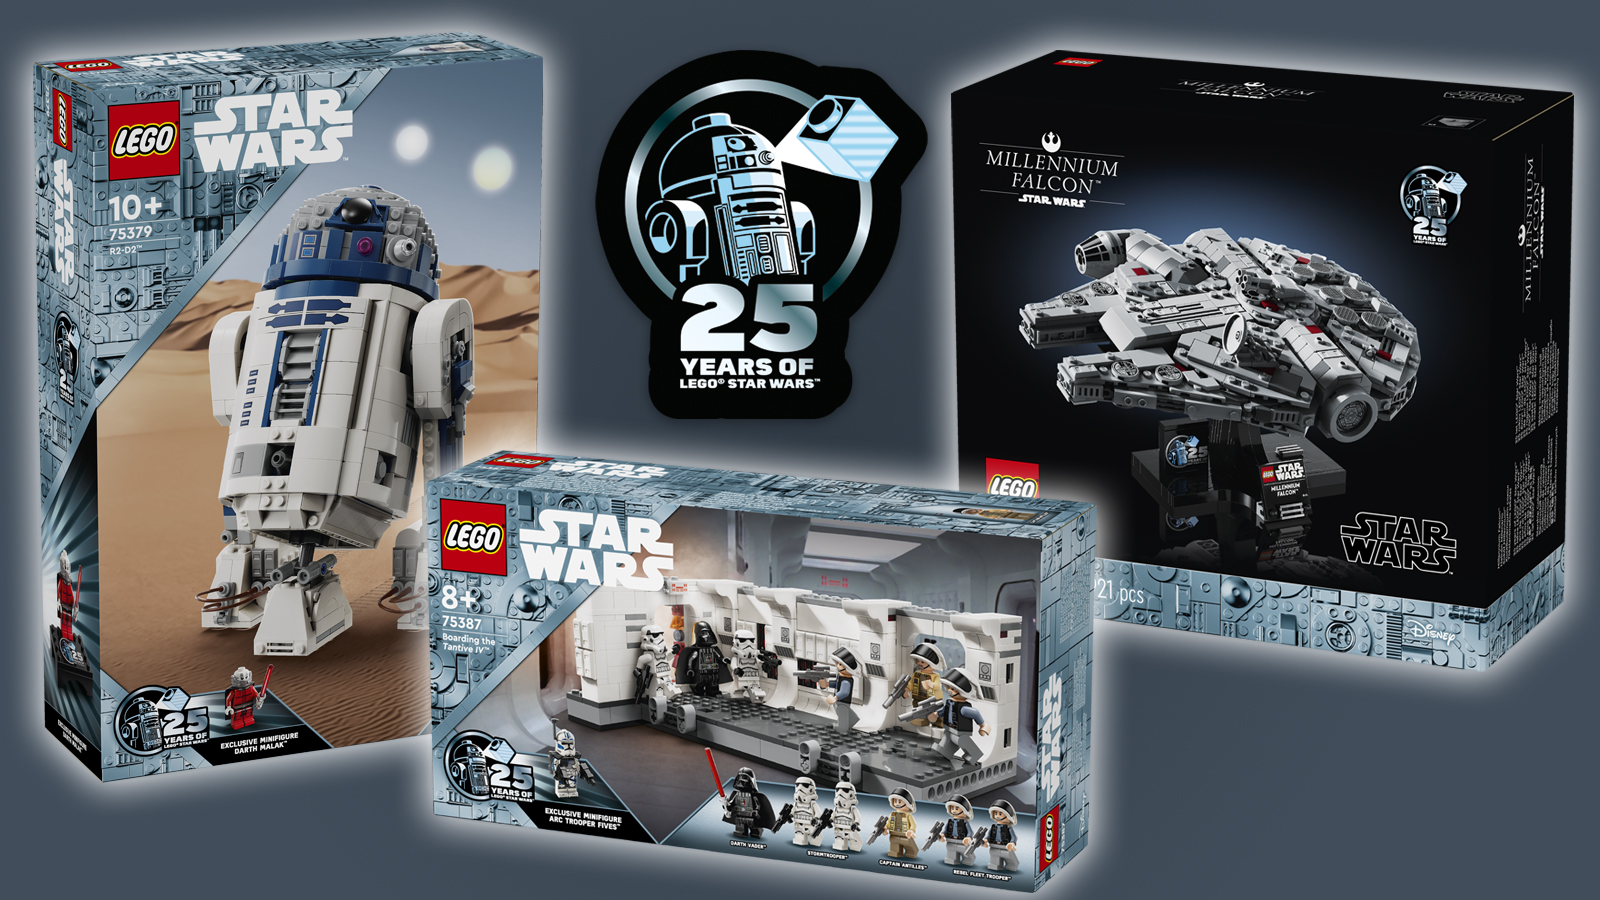 LEGO Star Wars célèbre 25 ans de collaboration avec des sets épiques 